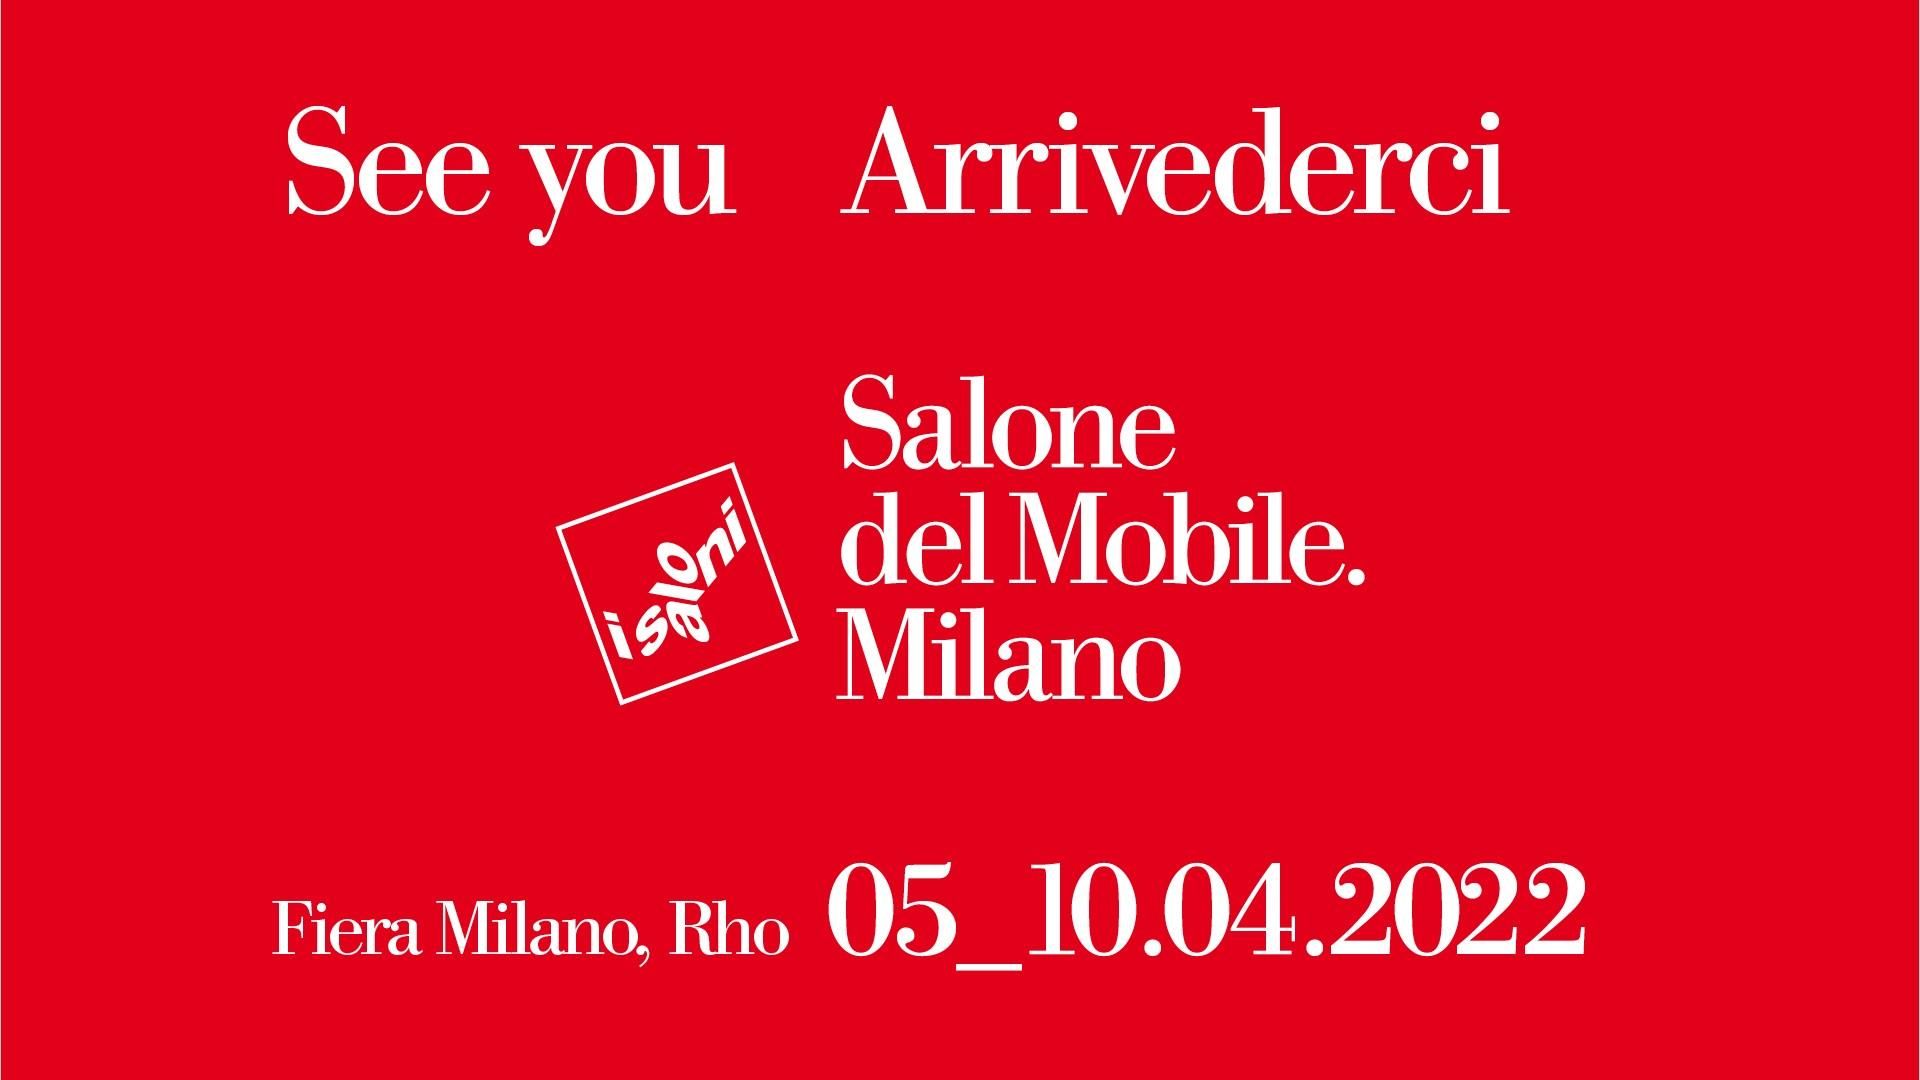 Salone del Mobile 2022 Events, Milan Design Fair 2022 iSaloni 2022